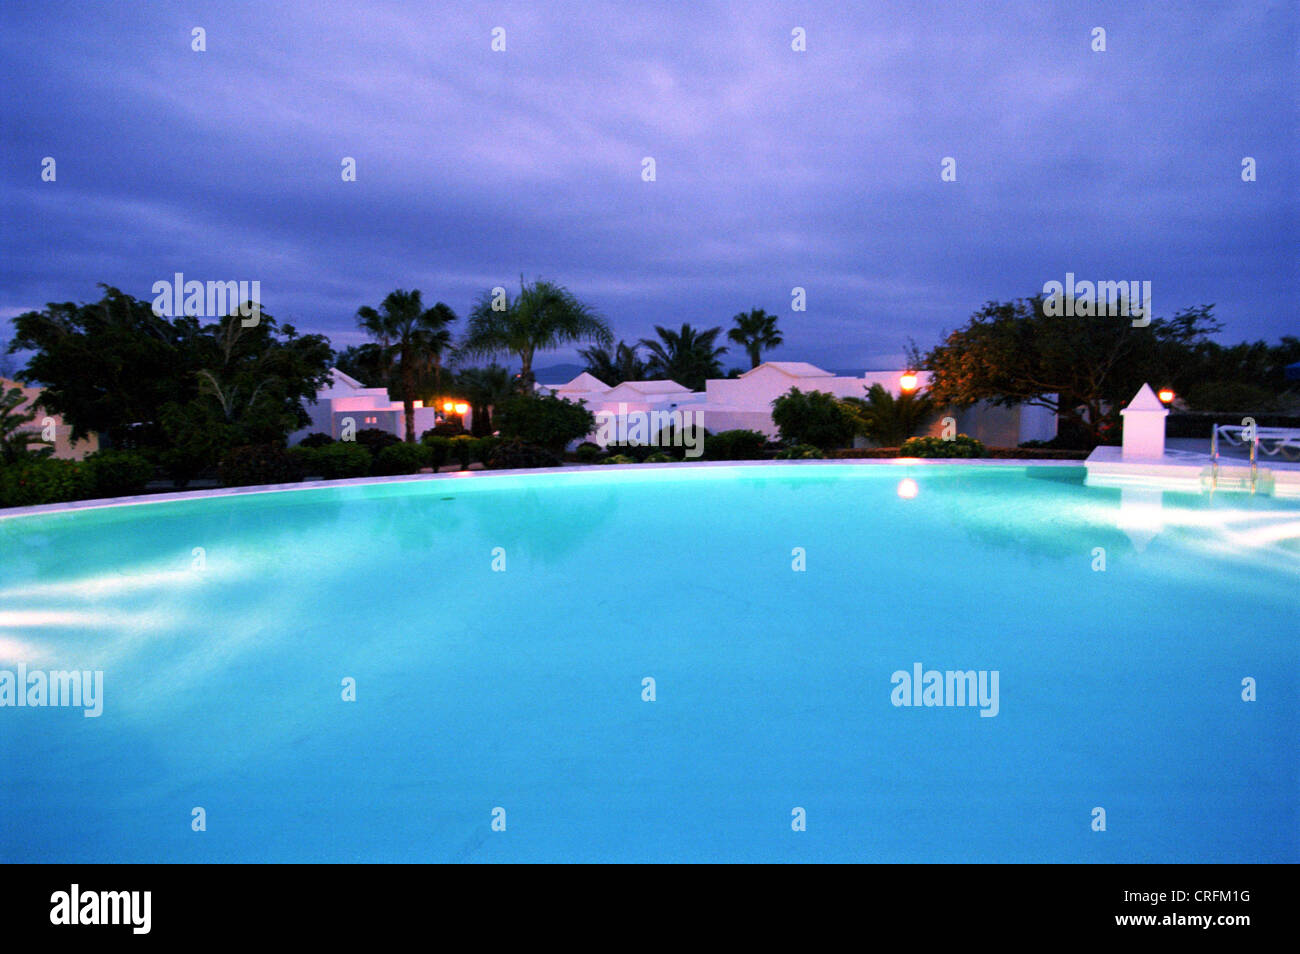 Playa Blanca, l'Espagne, le jeu de lumière à l'espace piscine Banque D'Images